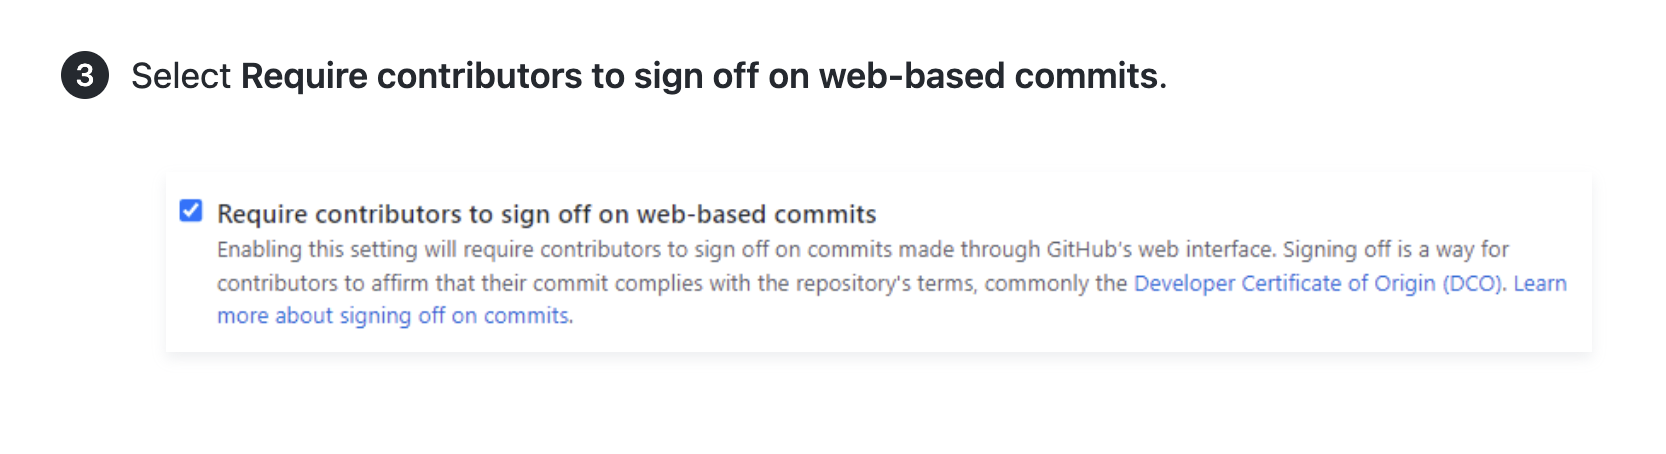 Captura de tela de um artigo que mostra instruções e uma captura de tela da interface do usuário para exigir a aprovação por parte dos colaboradores dos commits baseados na Web.